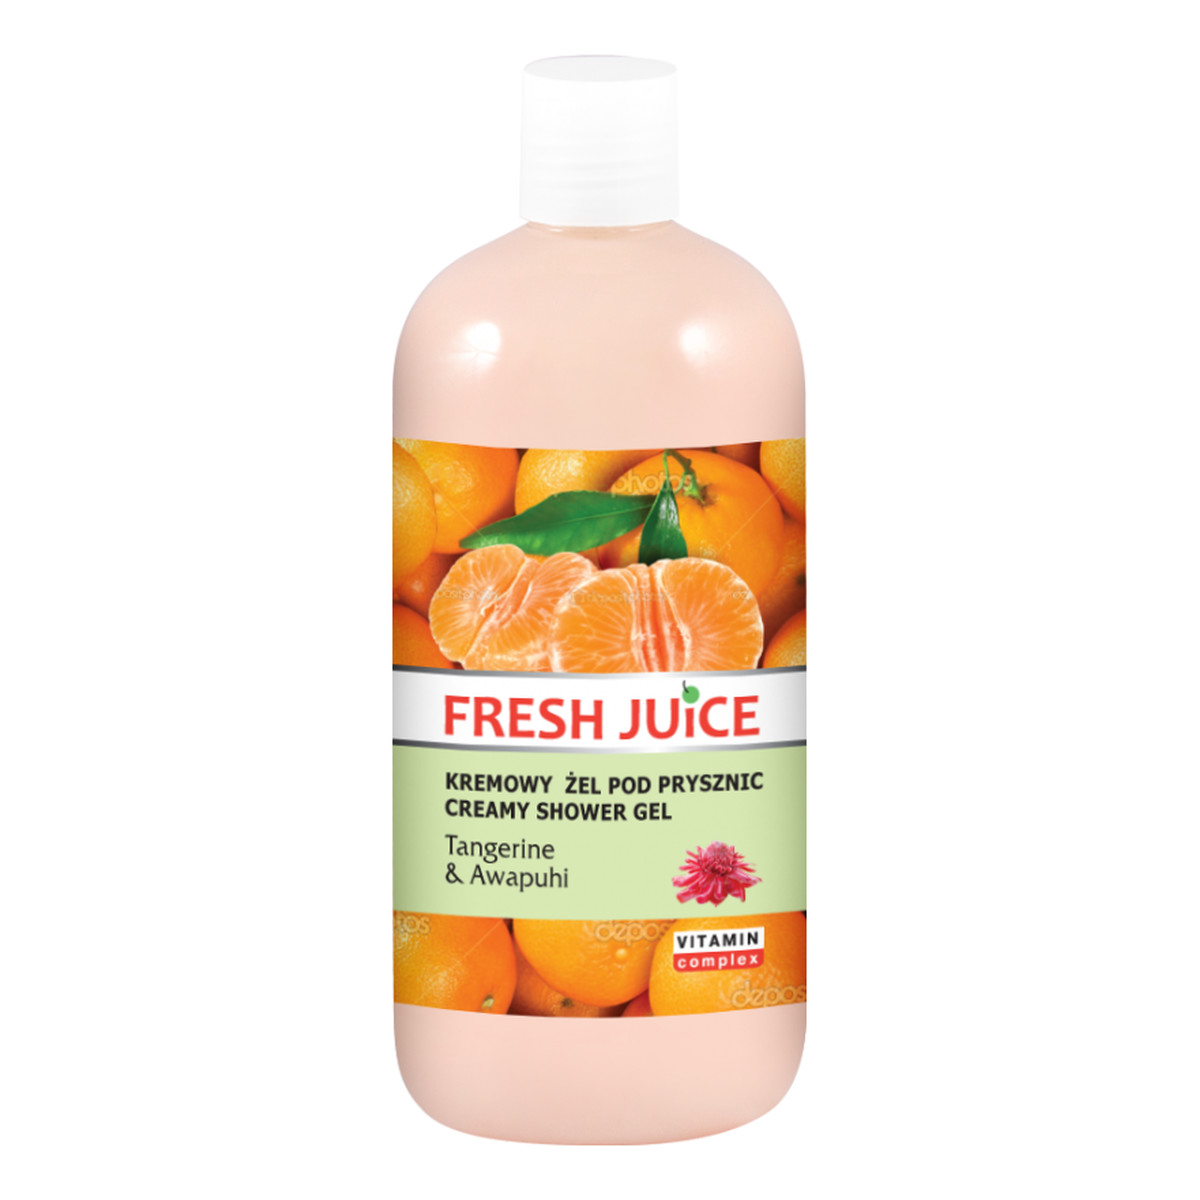 Fresh Juice Tangerine & Awapuhi Kremowy Żel Pod Prysznic 500ml